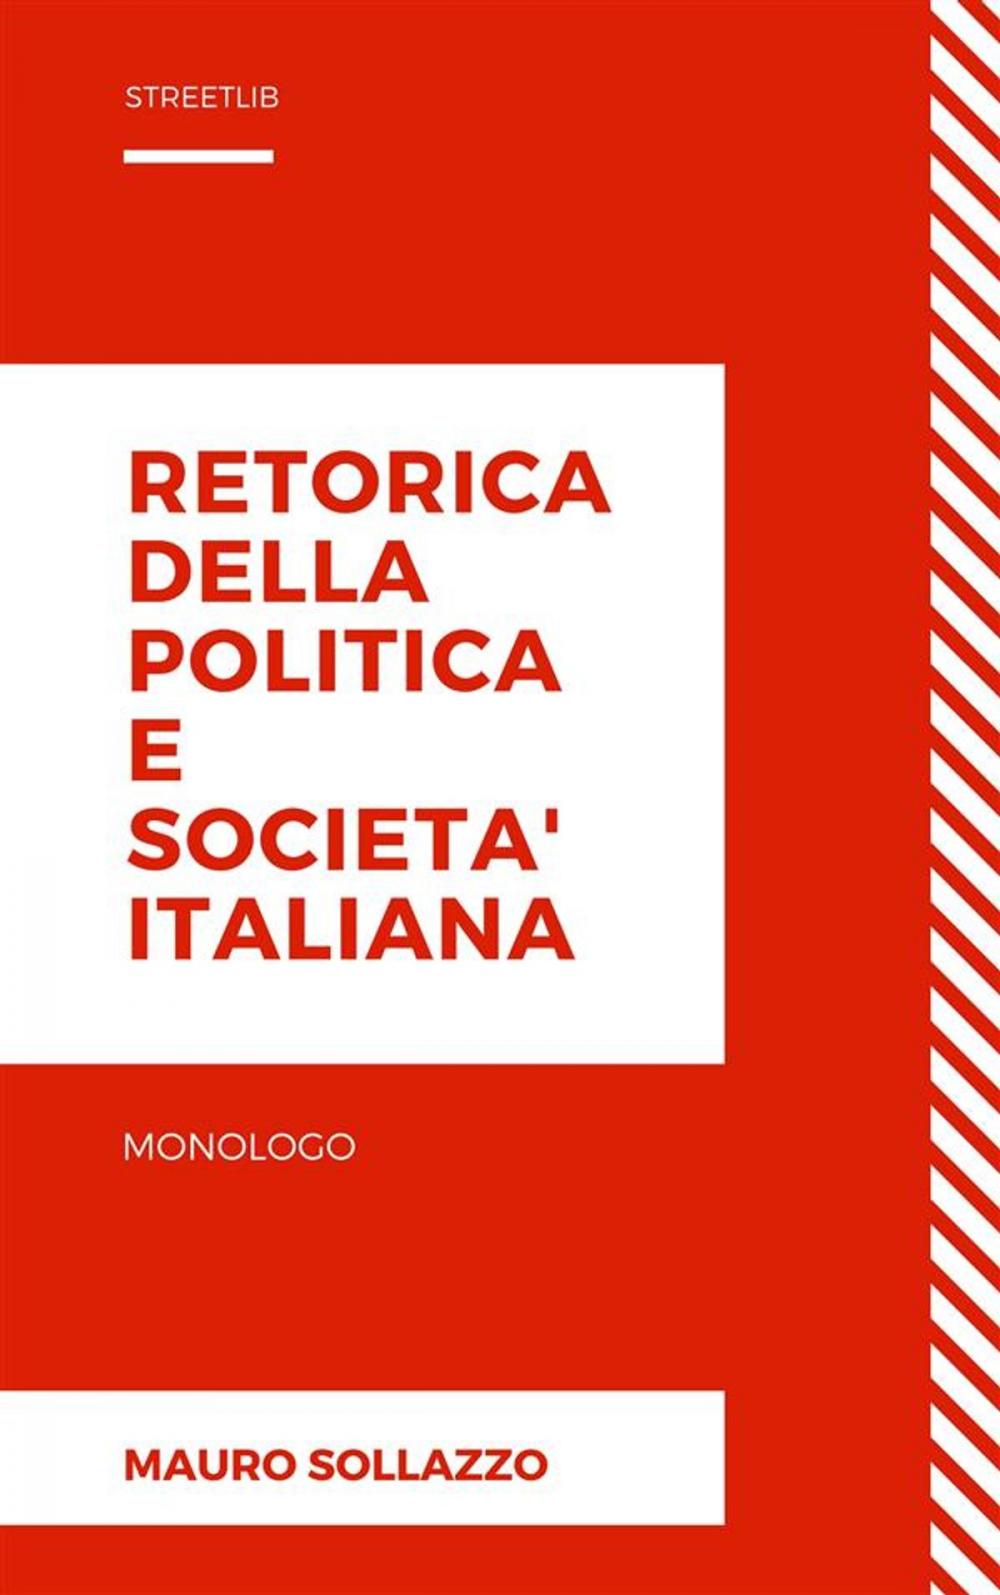 Big bigCover of Retorica della politica e societa' italiana